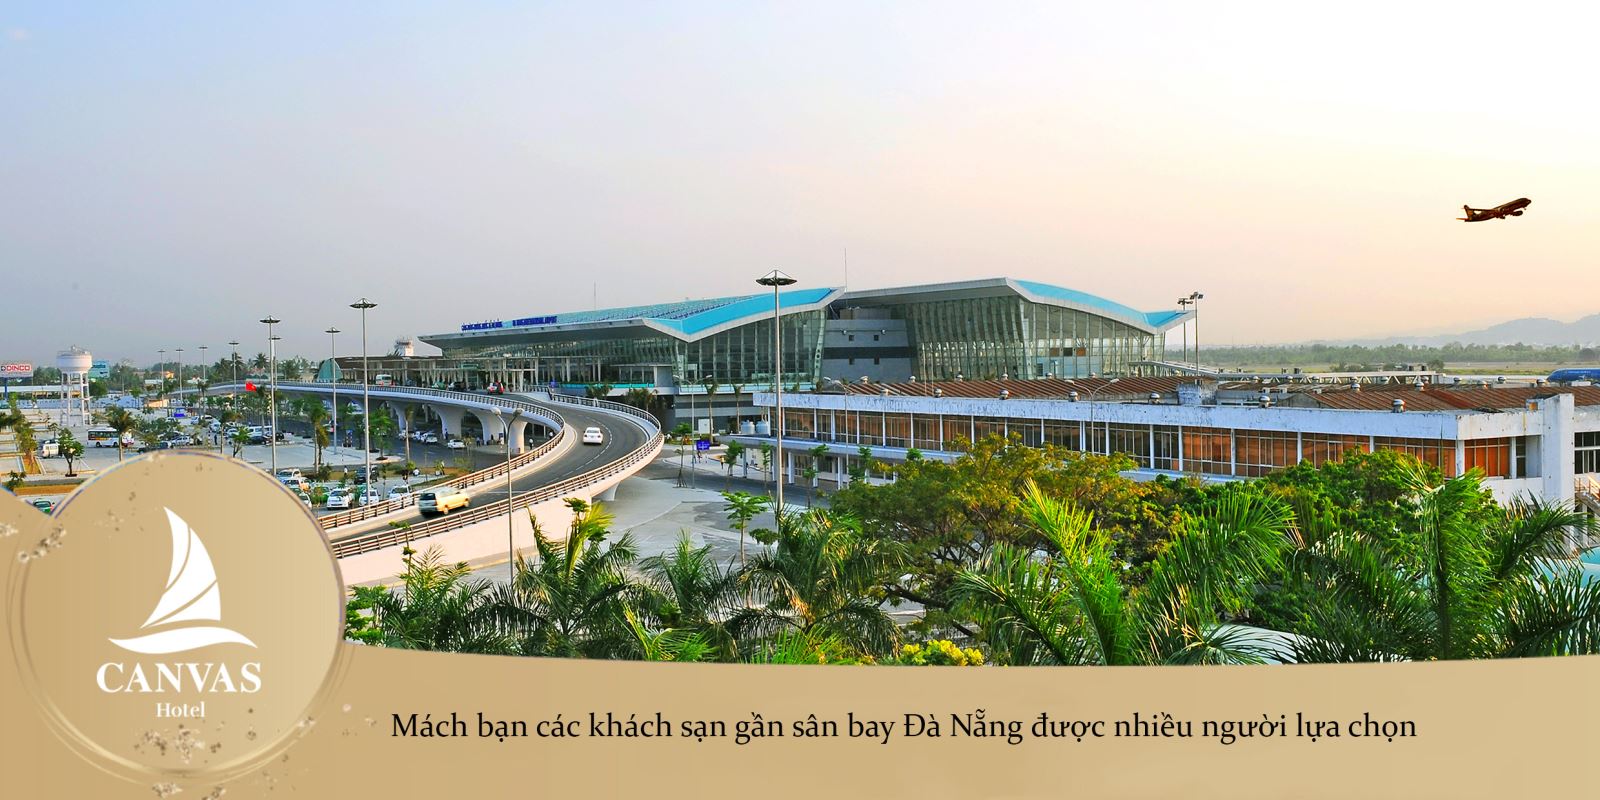 Mách bạn các khách sạn gần sân bay Đà Nẵng được nhiều người lựa chọn